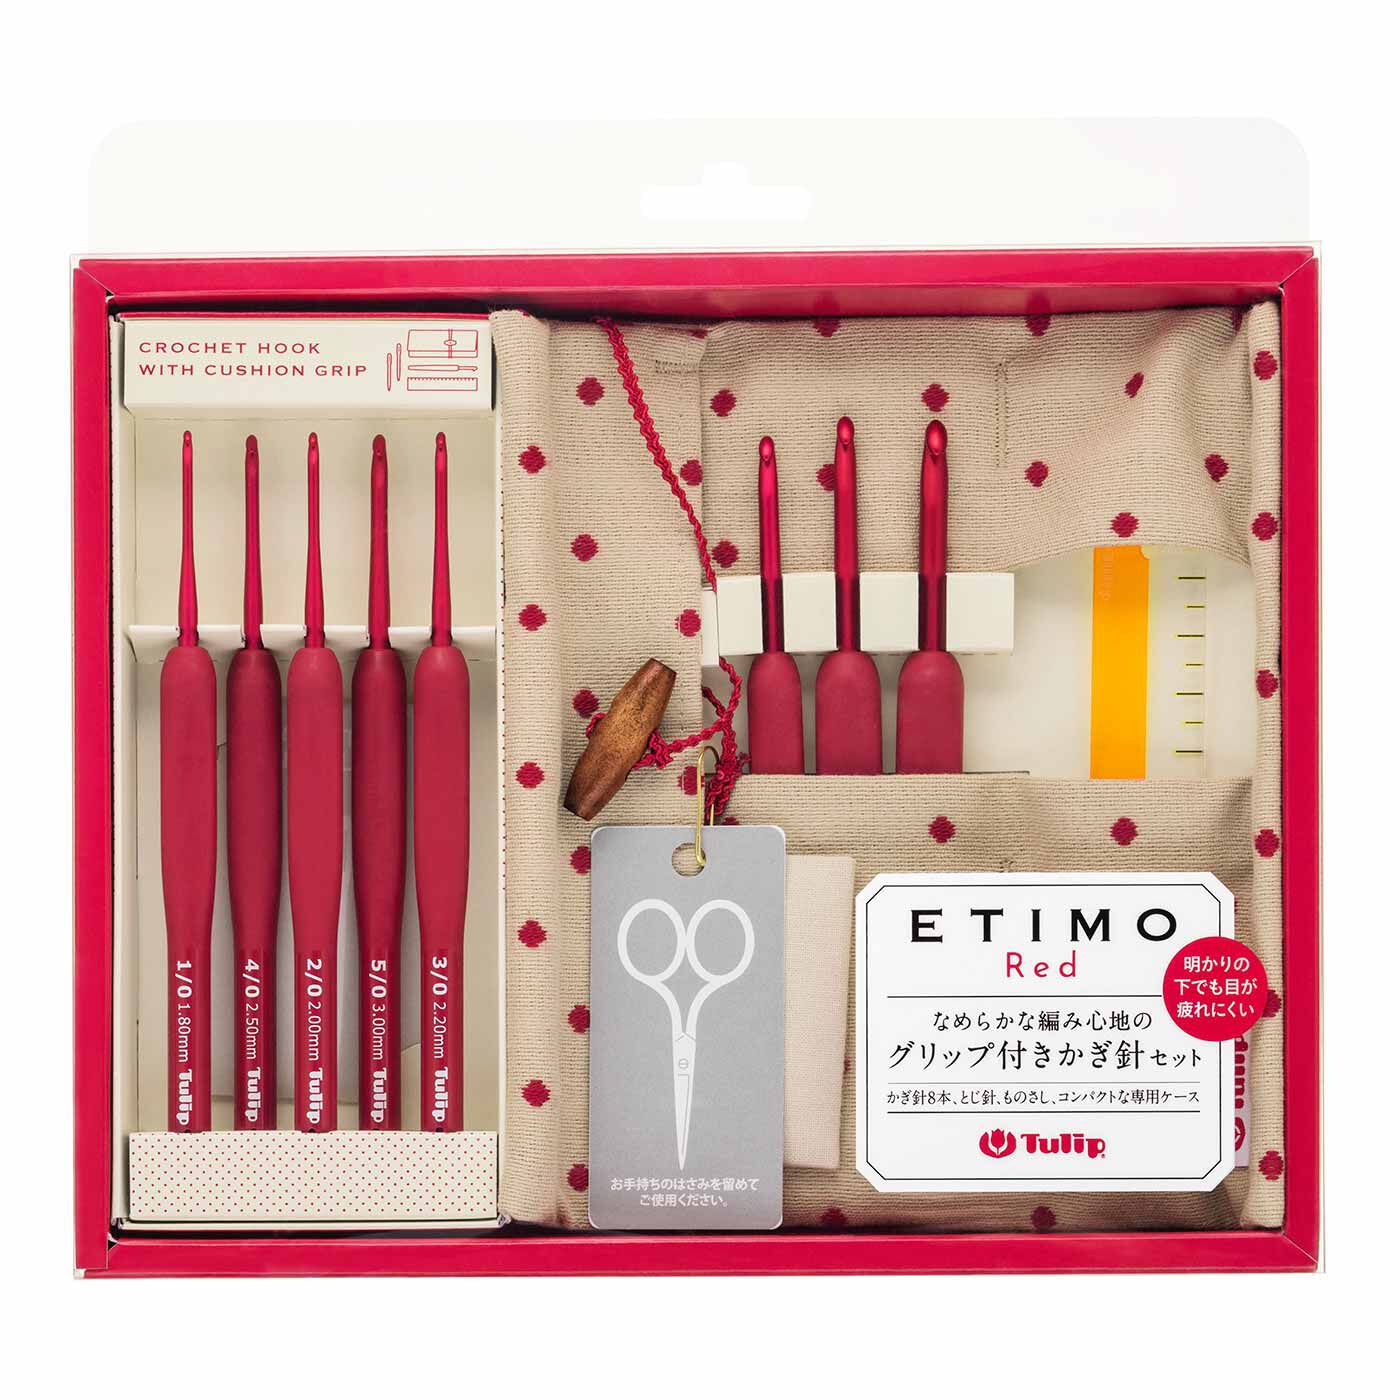 Couturier|Tulip ETIMO Red（エティモ レッド） なめらかな編み心地のグリップ付きかぎ針セット|●お届けセットの一式です。